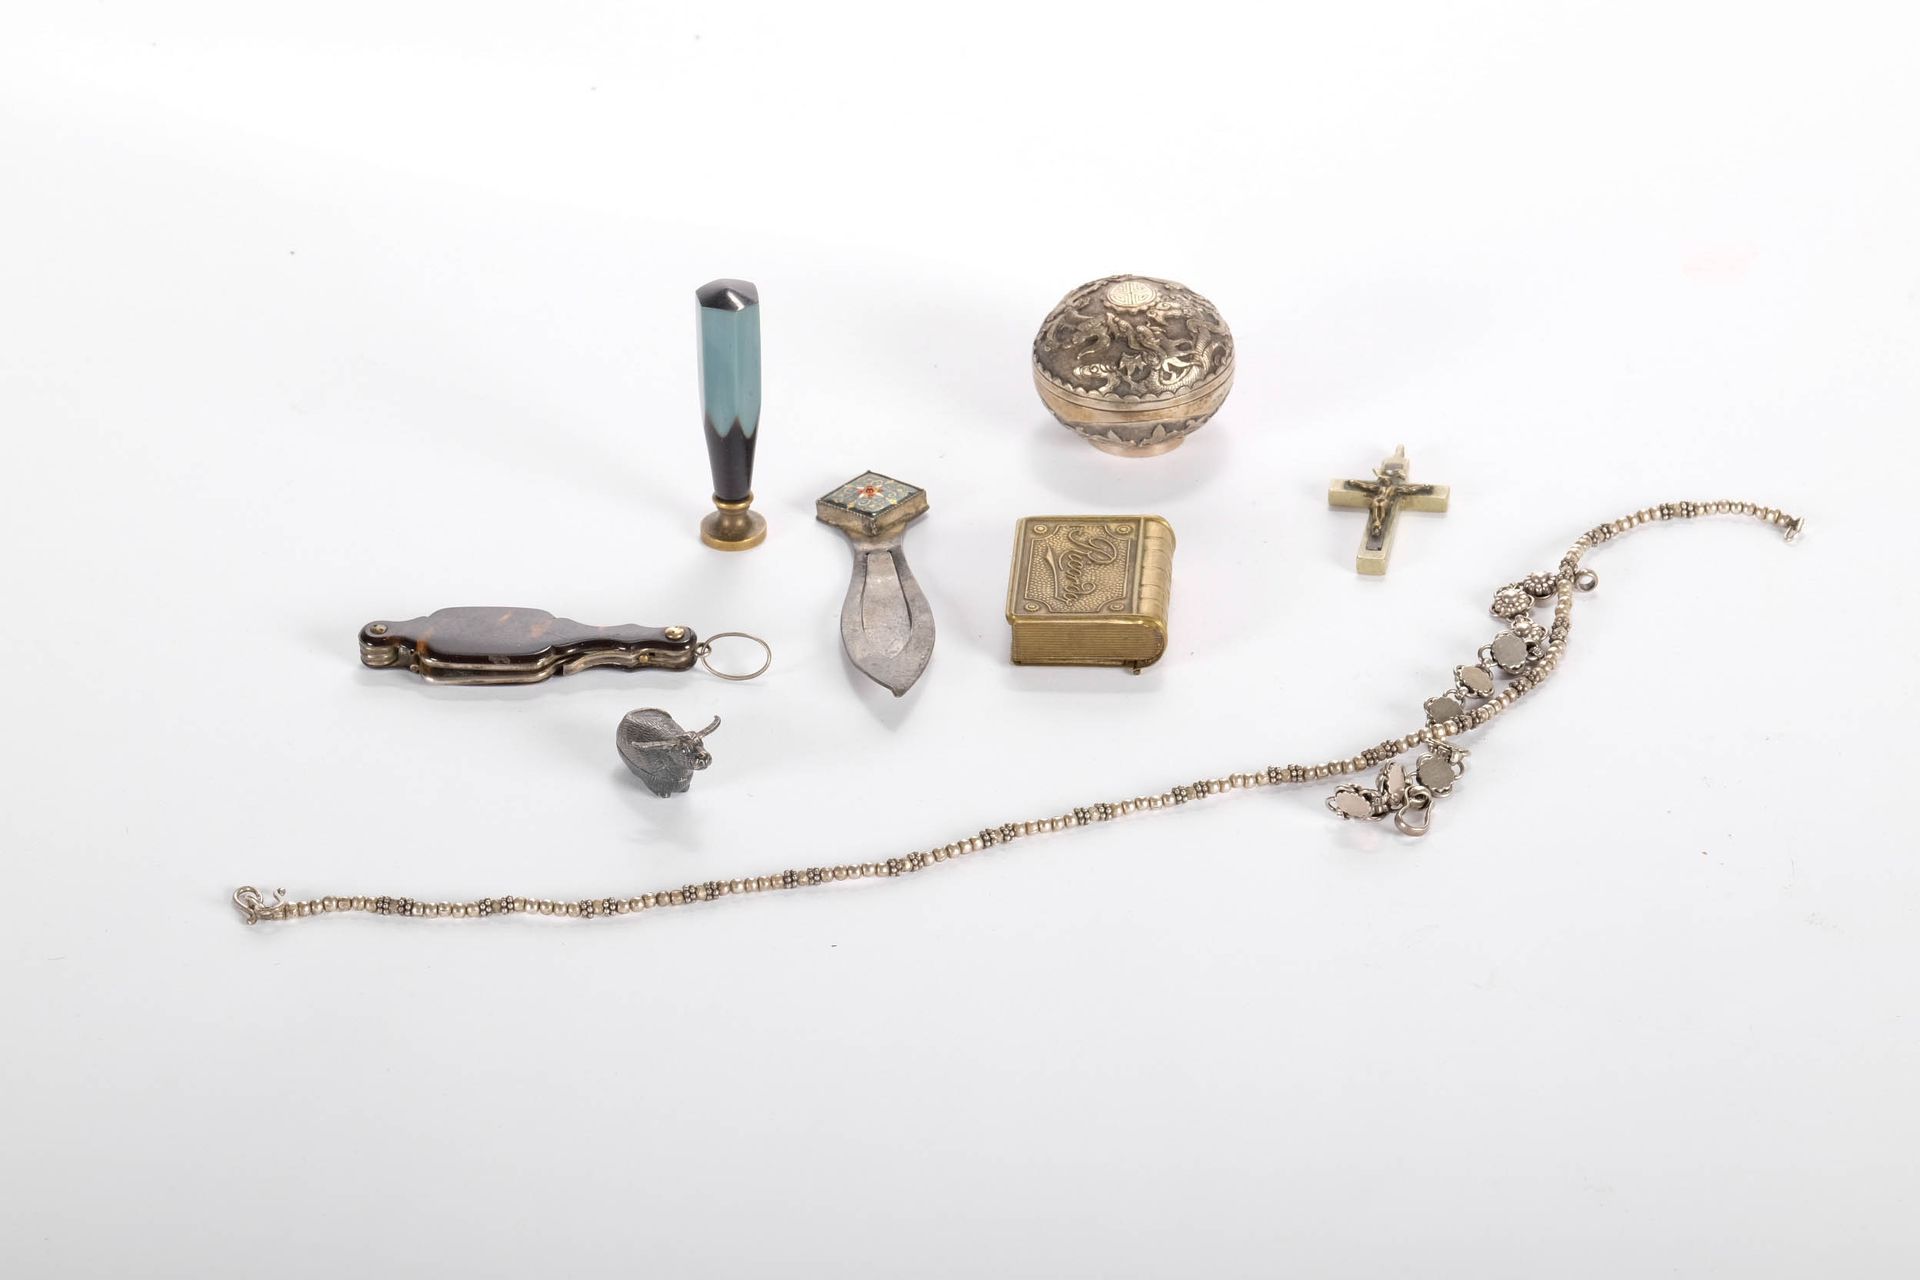 Bijouterie, objet de vitrine Objetos de exposición y joyas; algo de plata.